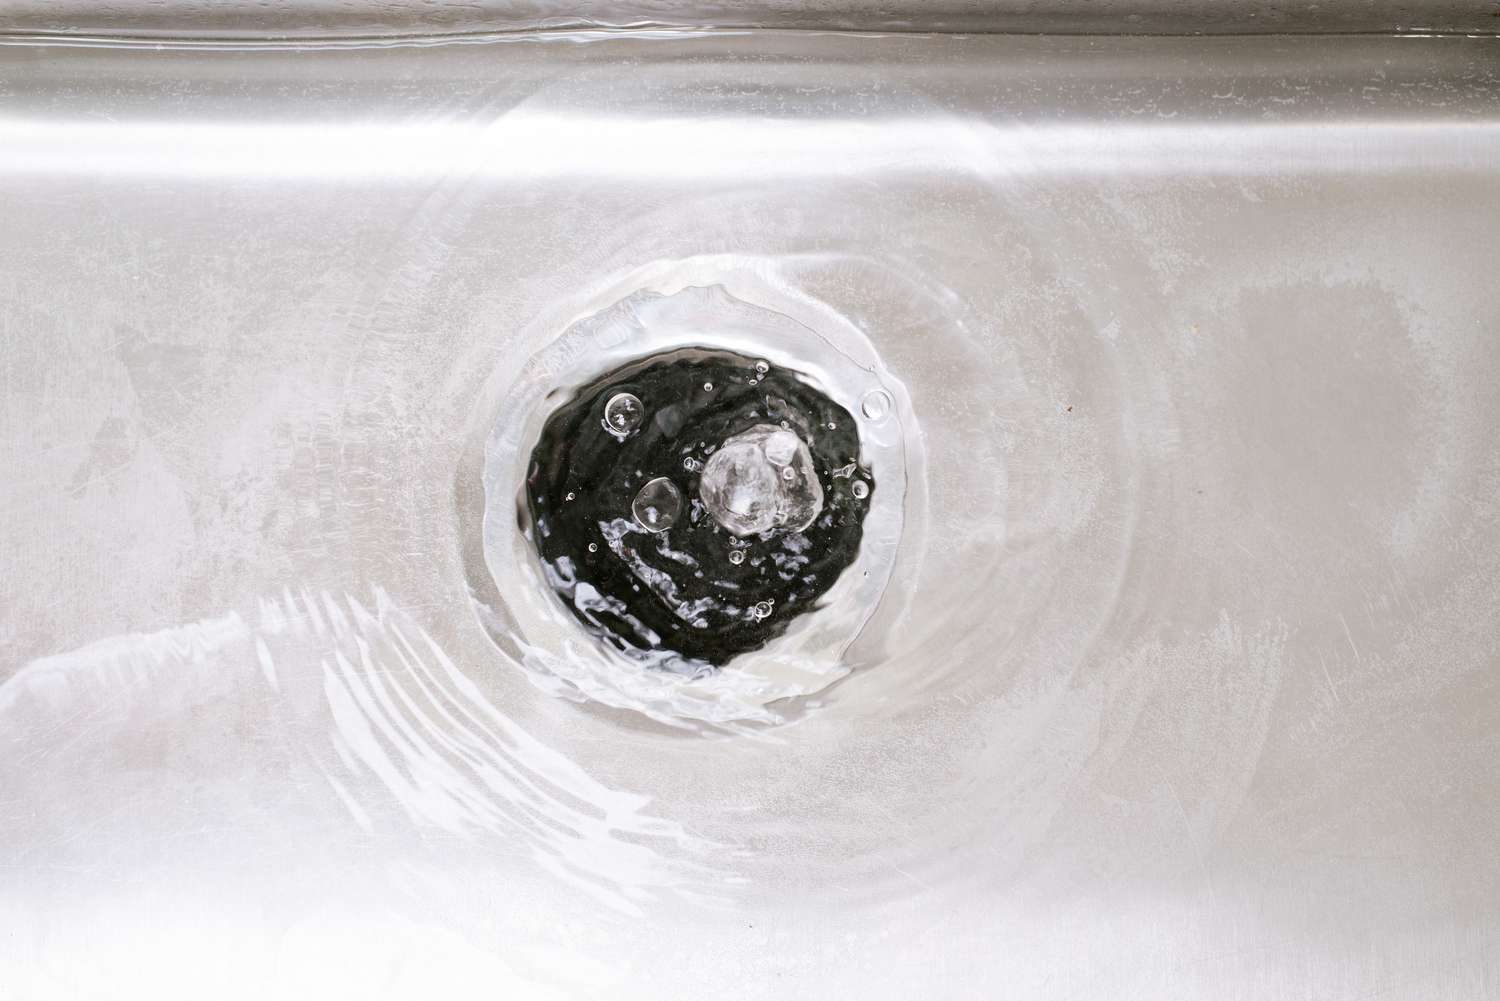 Water running through flush sink garbage disposal